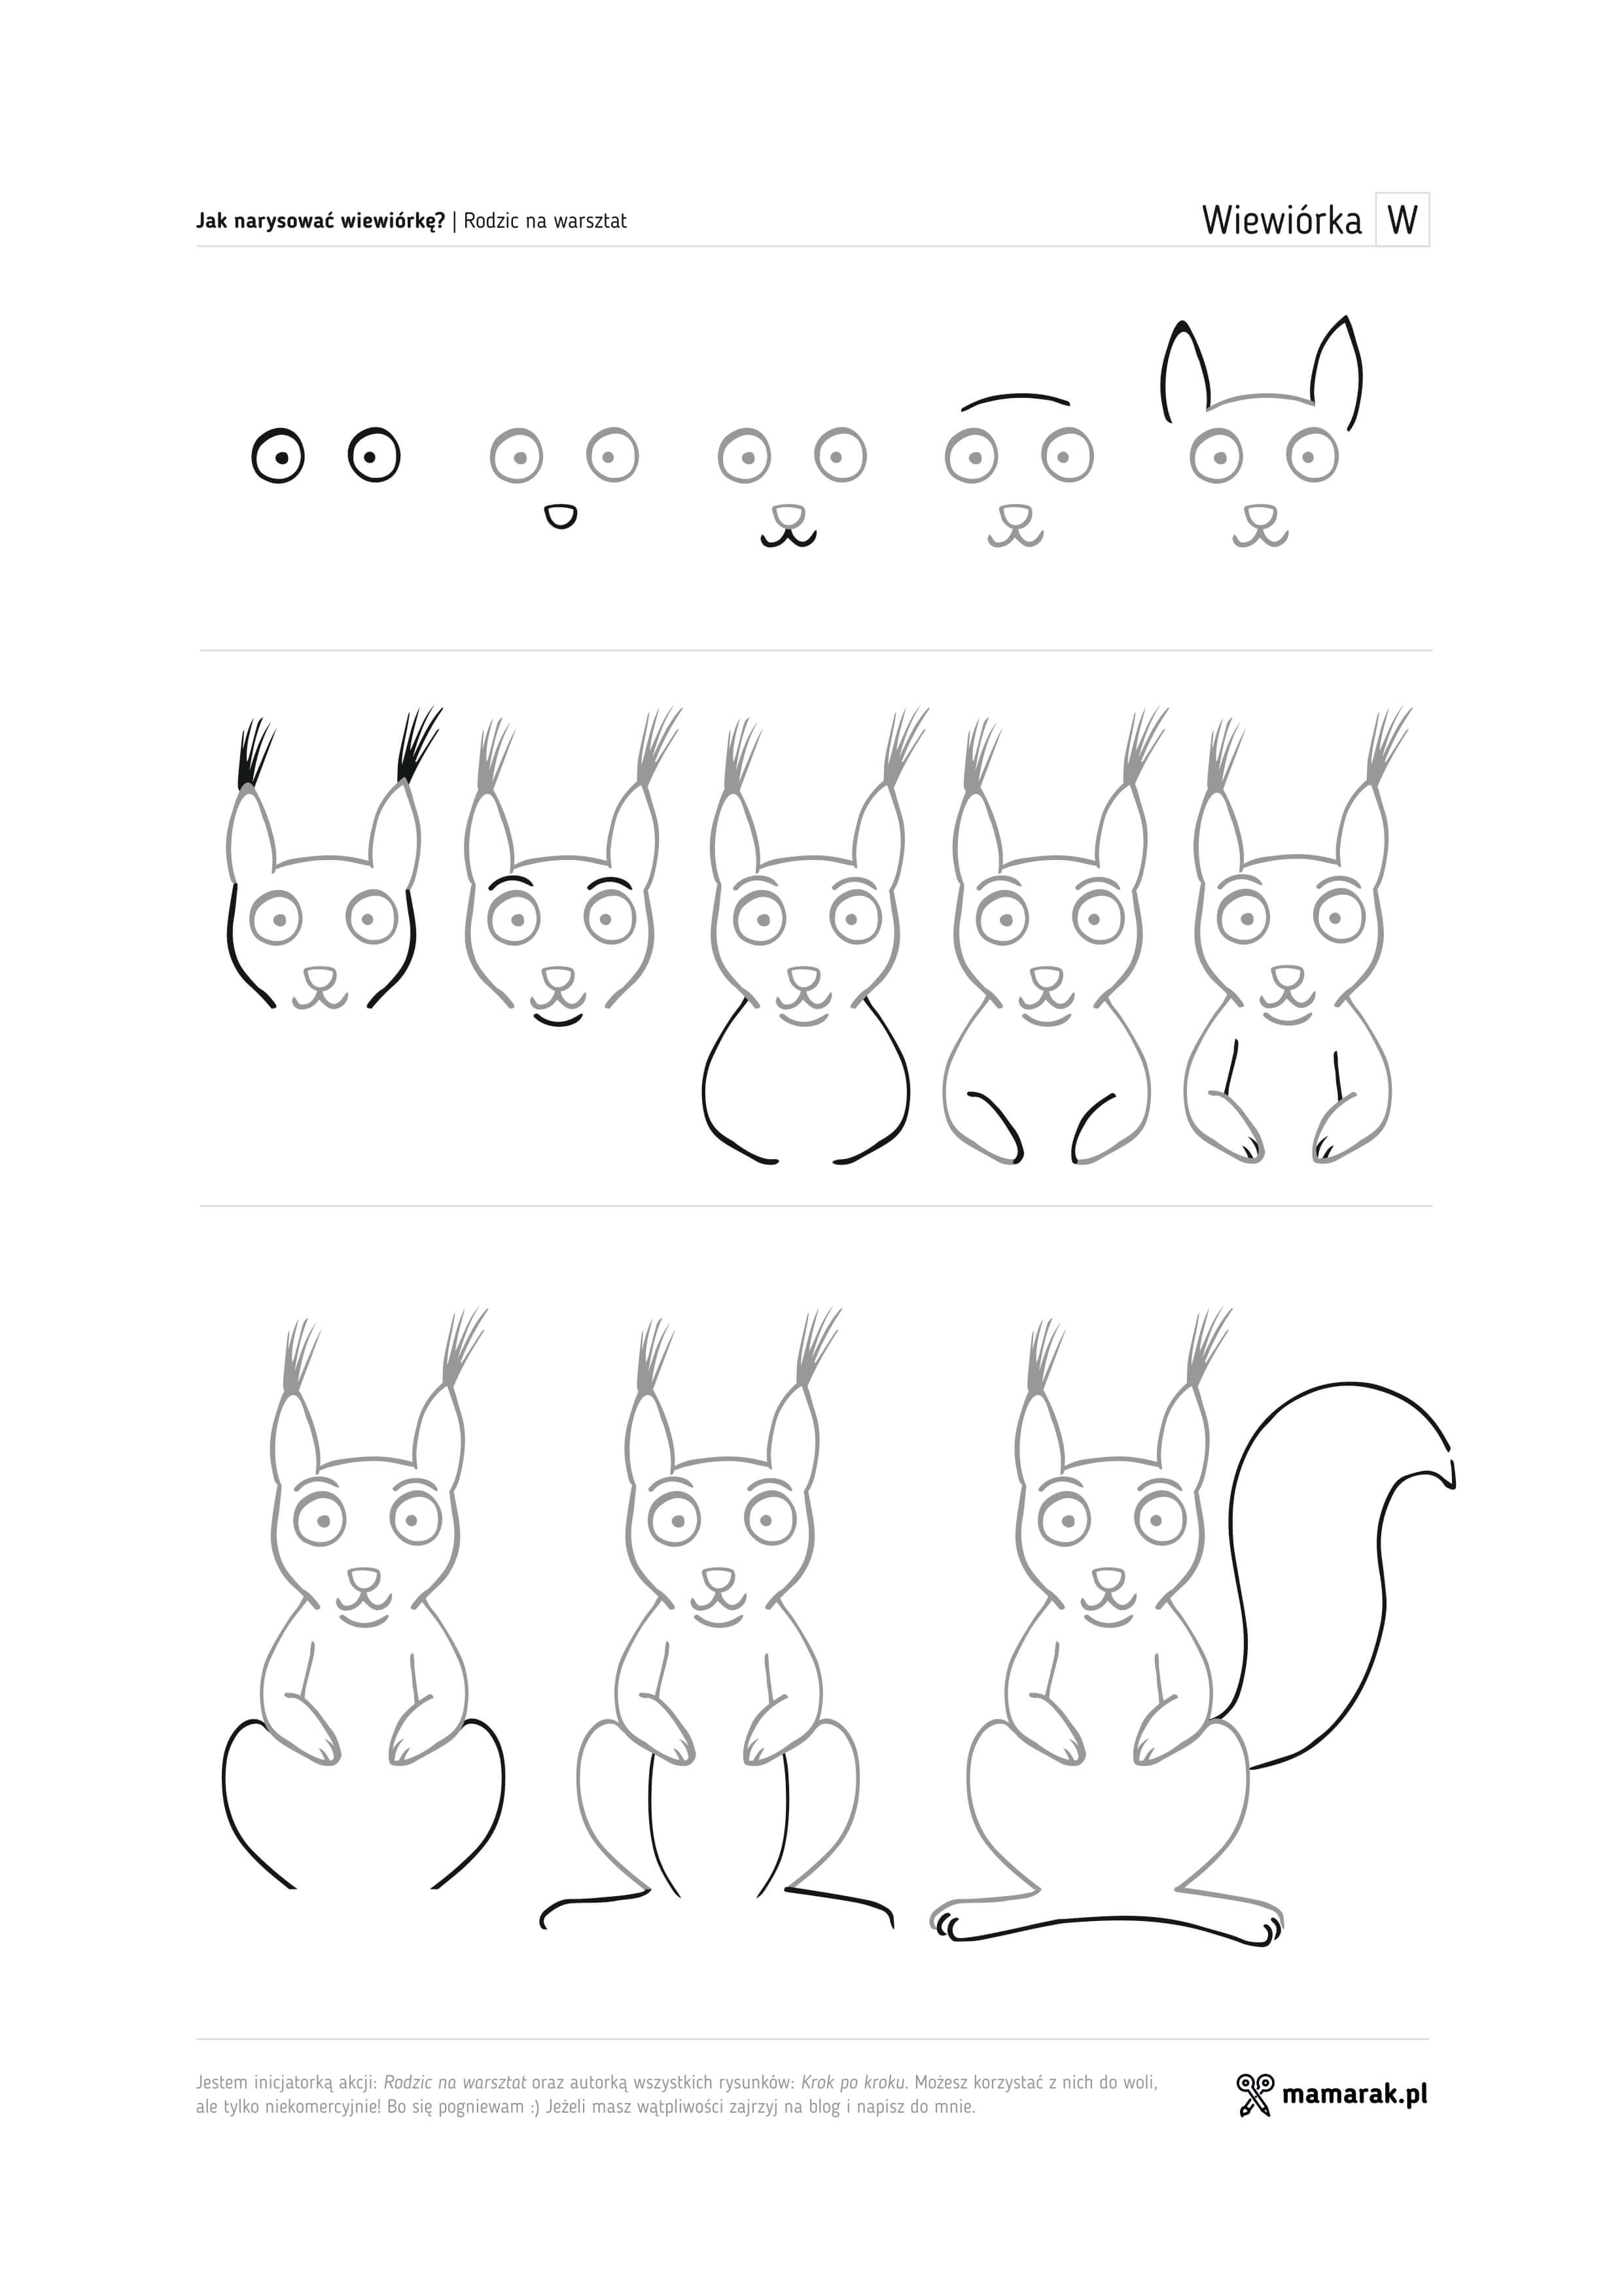 Jak narysować jeża, wiewiórkę i kreta? 3 karty krok po